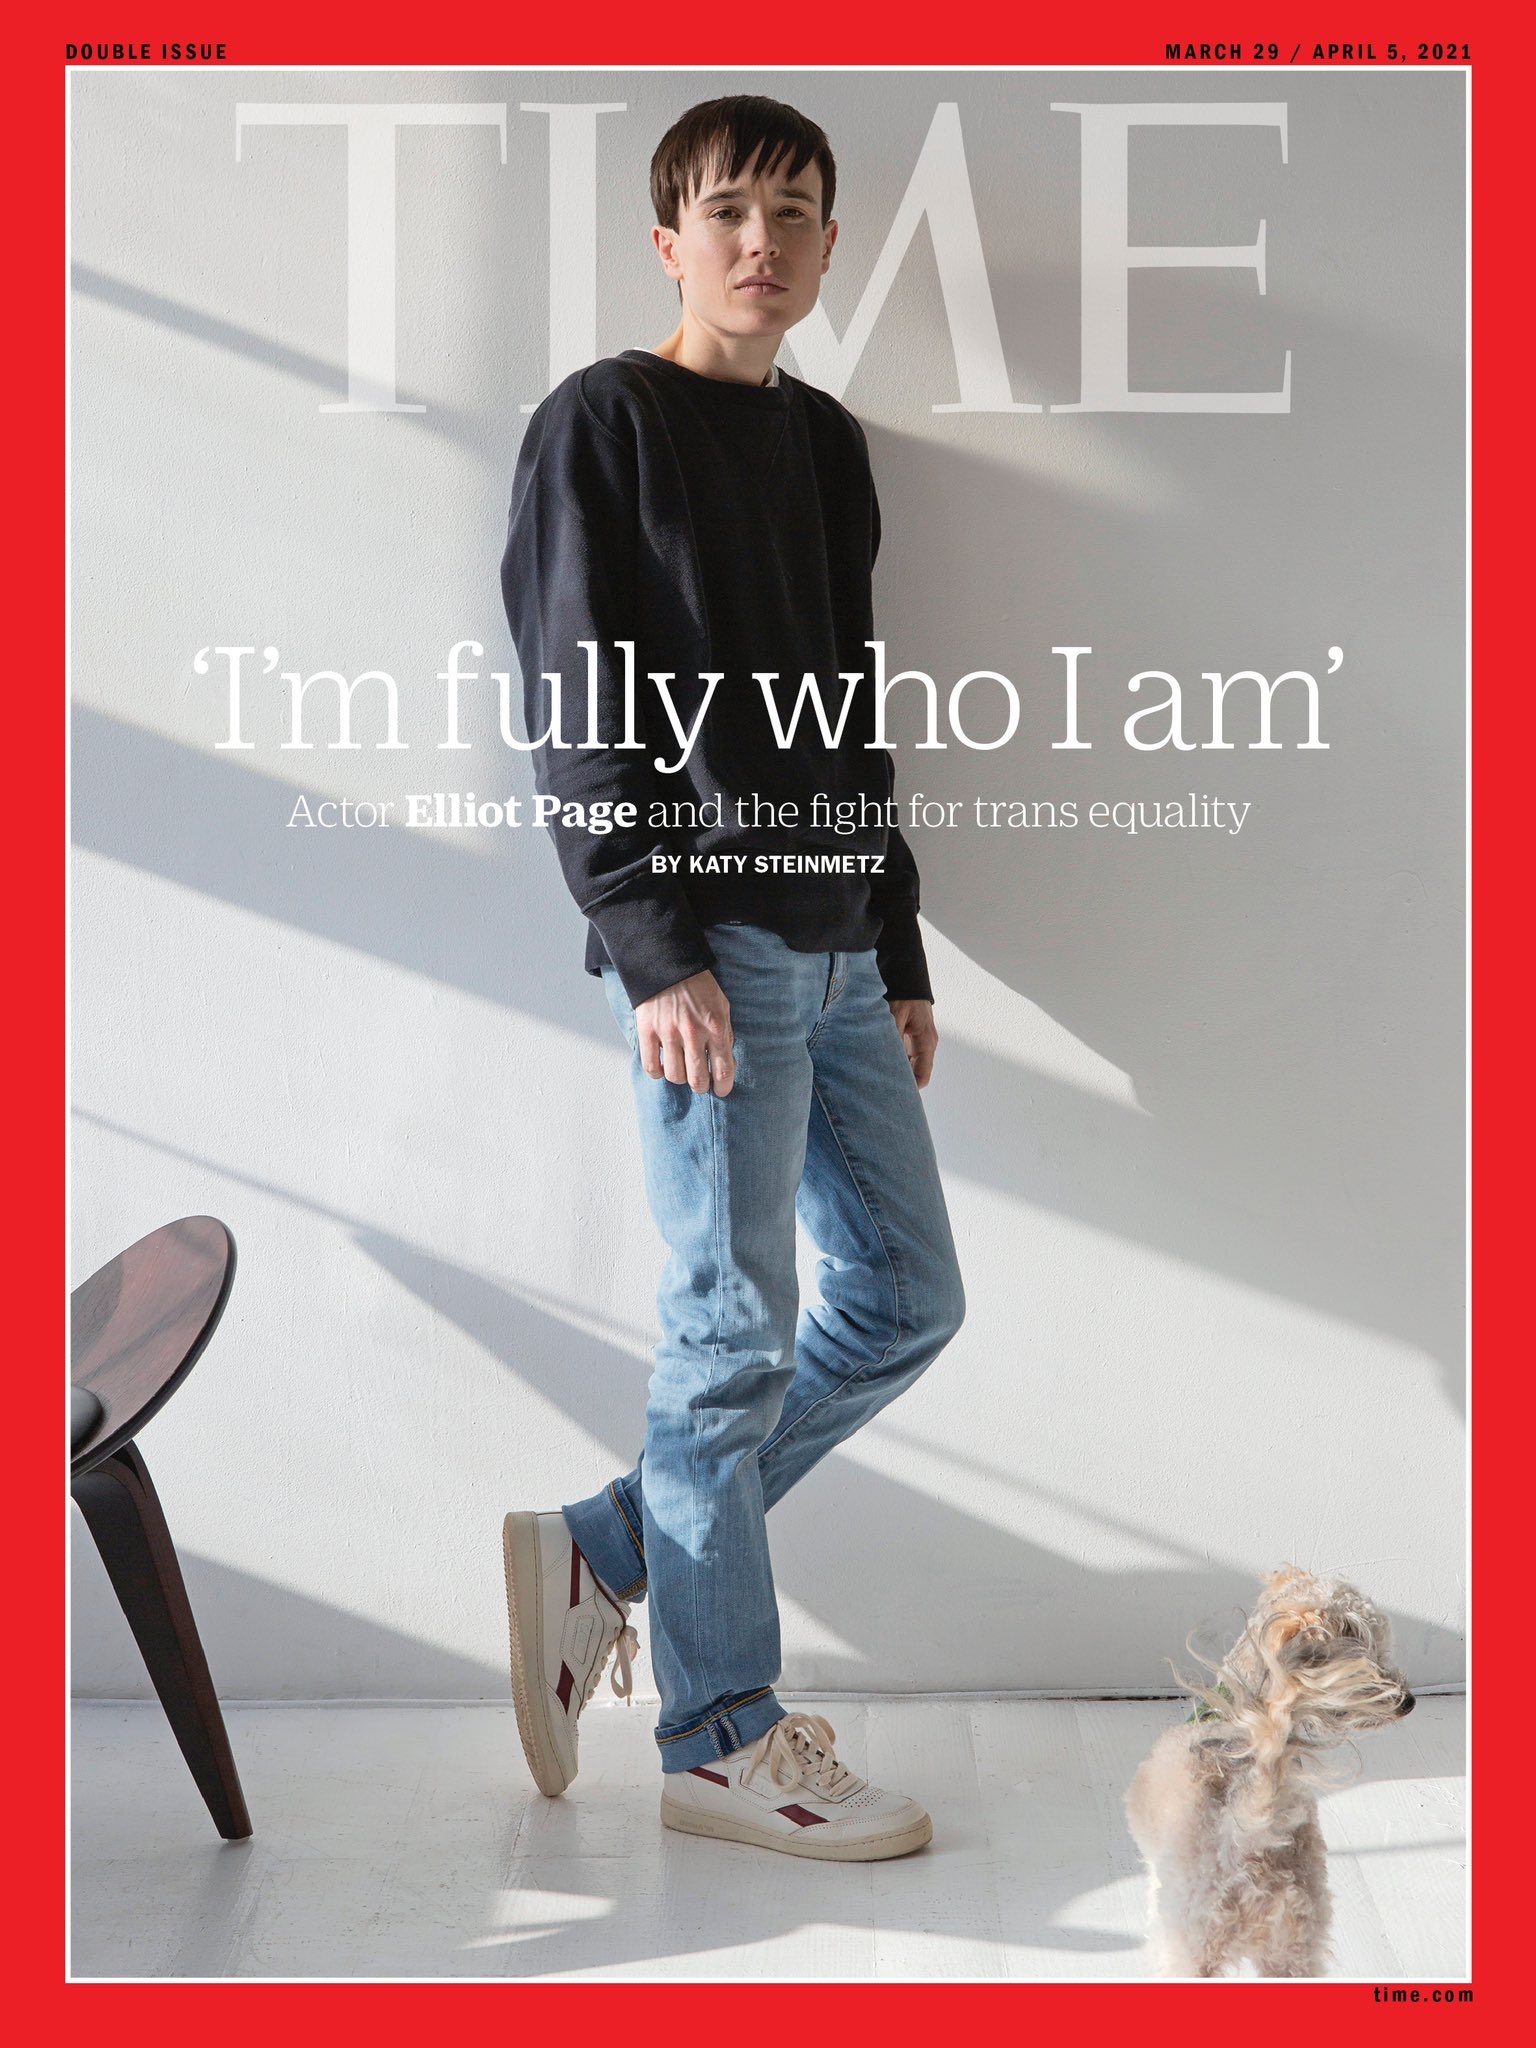 Elliot Page aparece en la portada de la revista Time